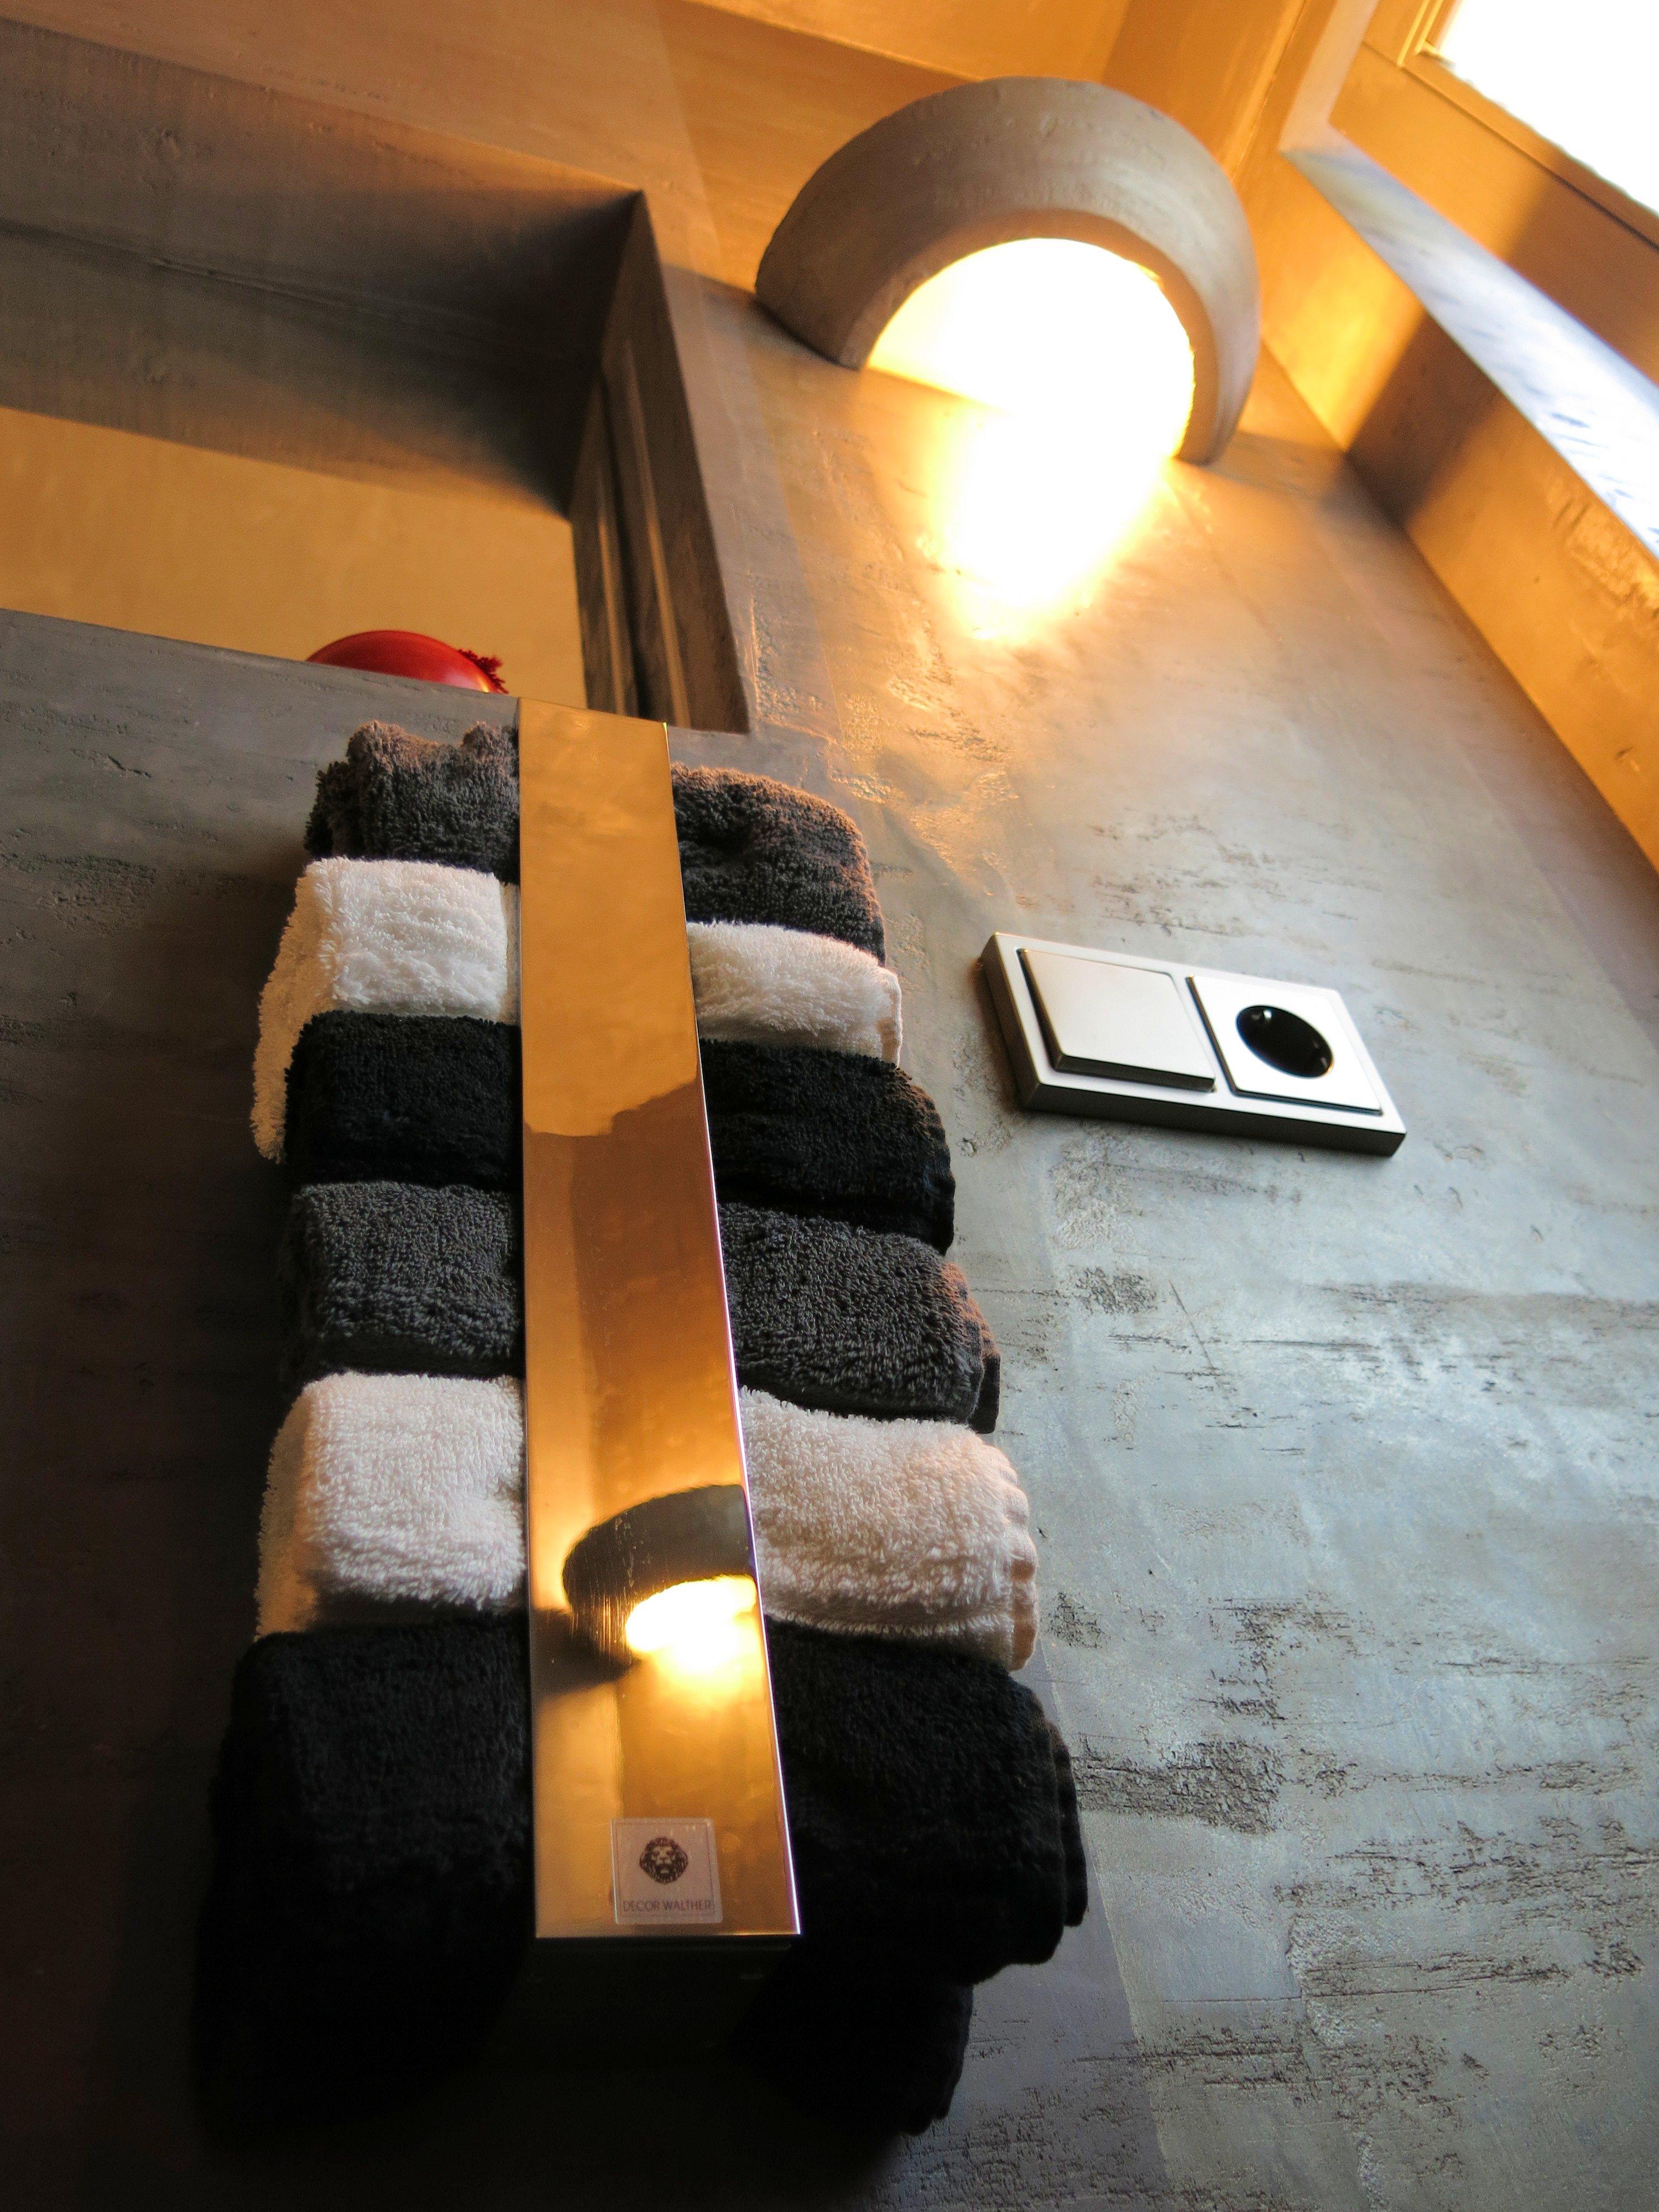 Schöne Moderne Badezimmer Wandgestaltung #wandleuchte #handtuchhalter #grauewandfarbe ©www.wandmanufaktur.de